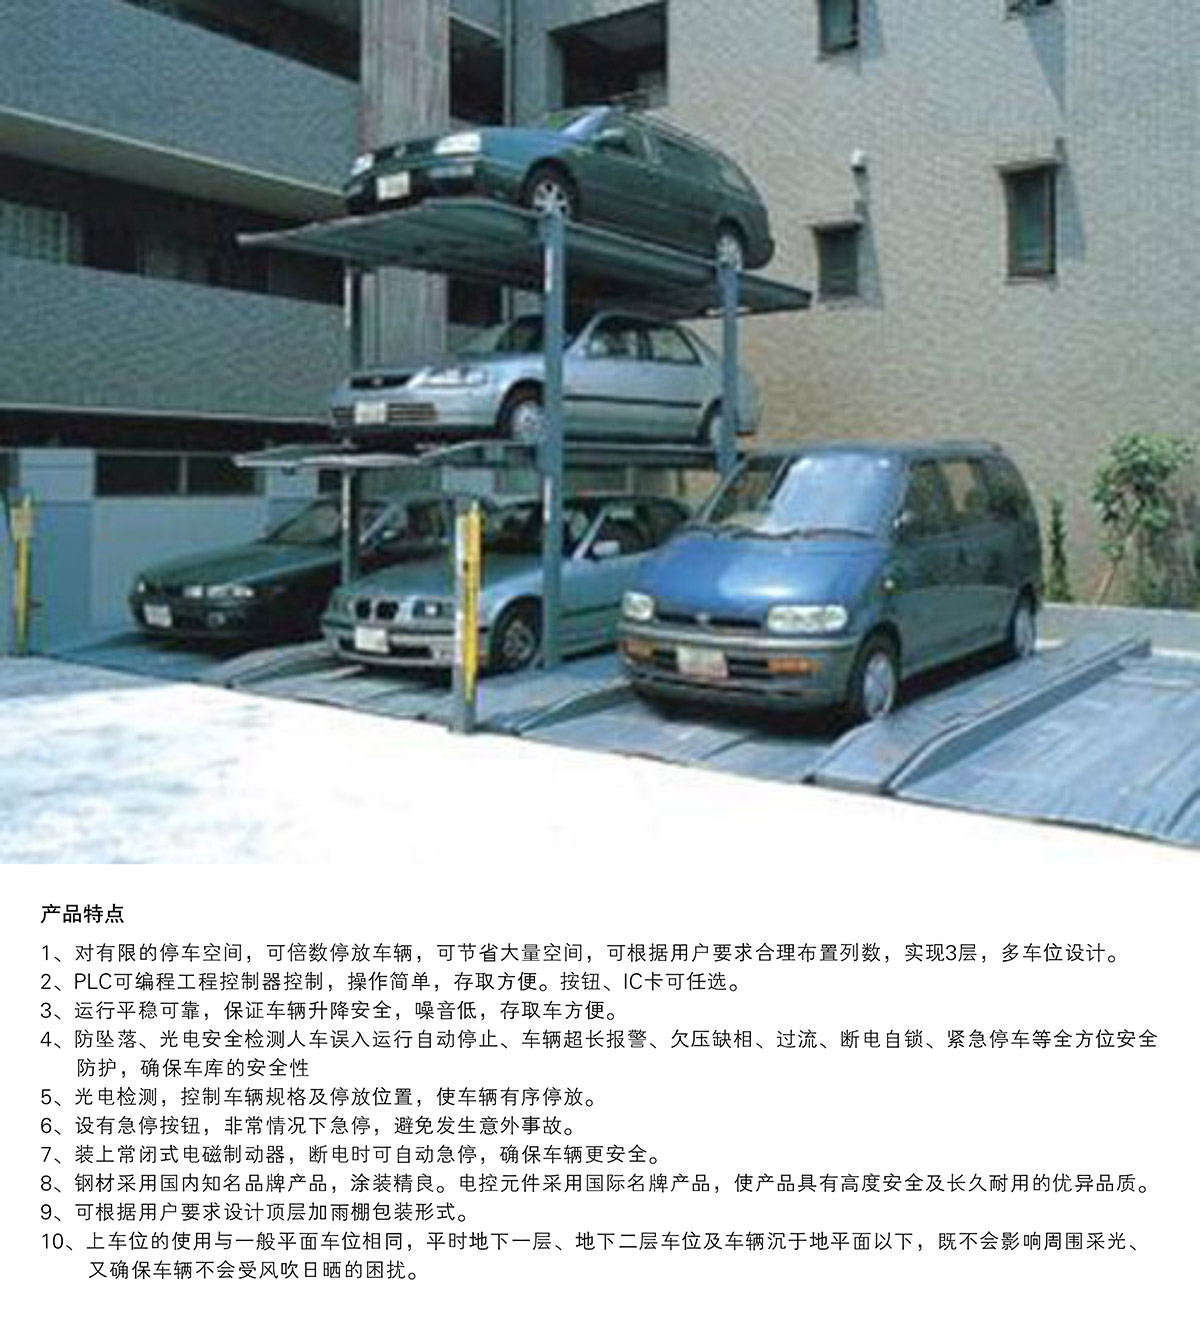 智慧停车07PJS3D2三层地坑简易升降机械立体停车产品特点.jpg